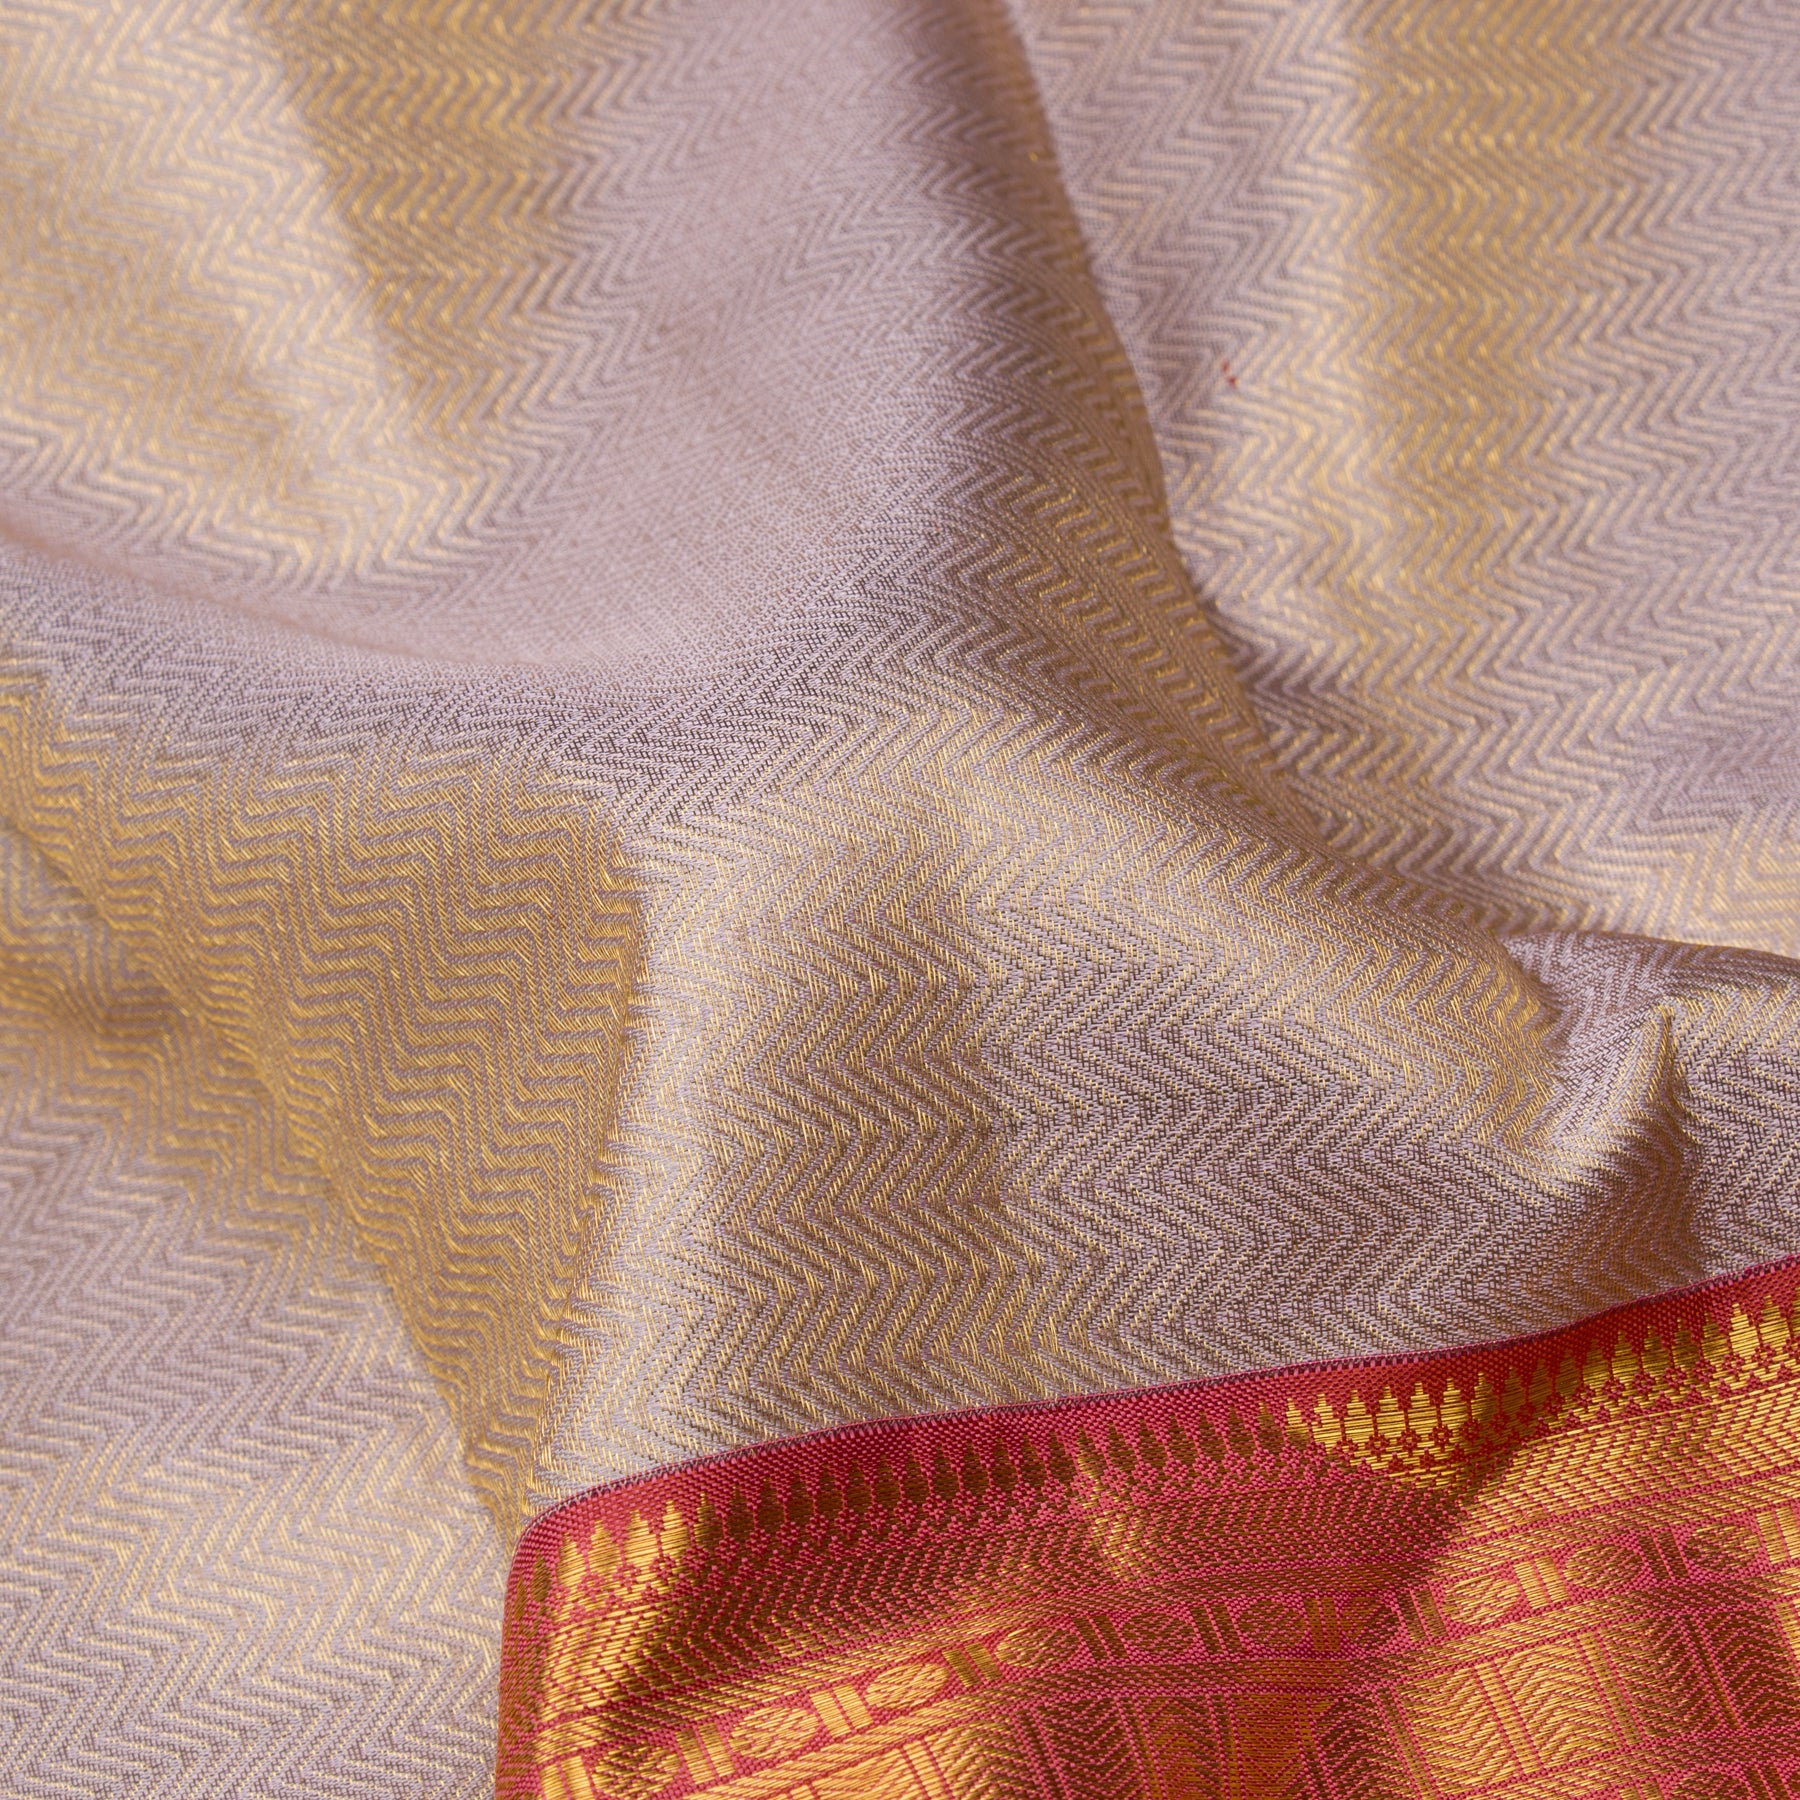 Kanakavalli Kanjivaram Silk Sari 23-110-HS001-10432 - Fabric View